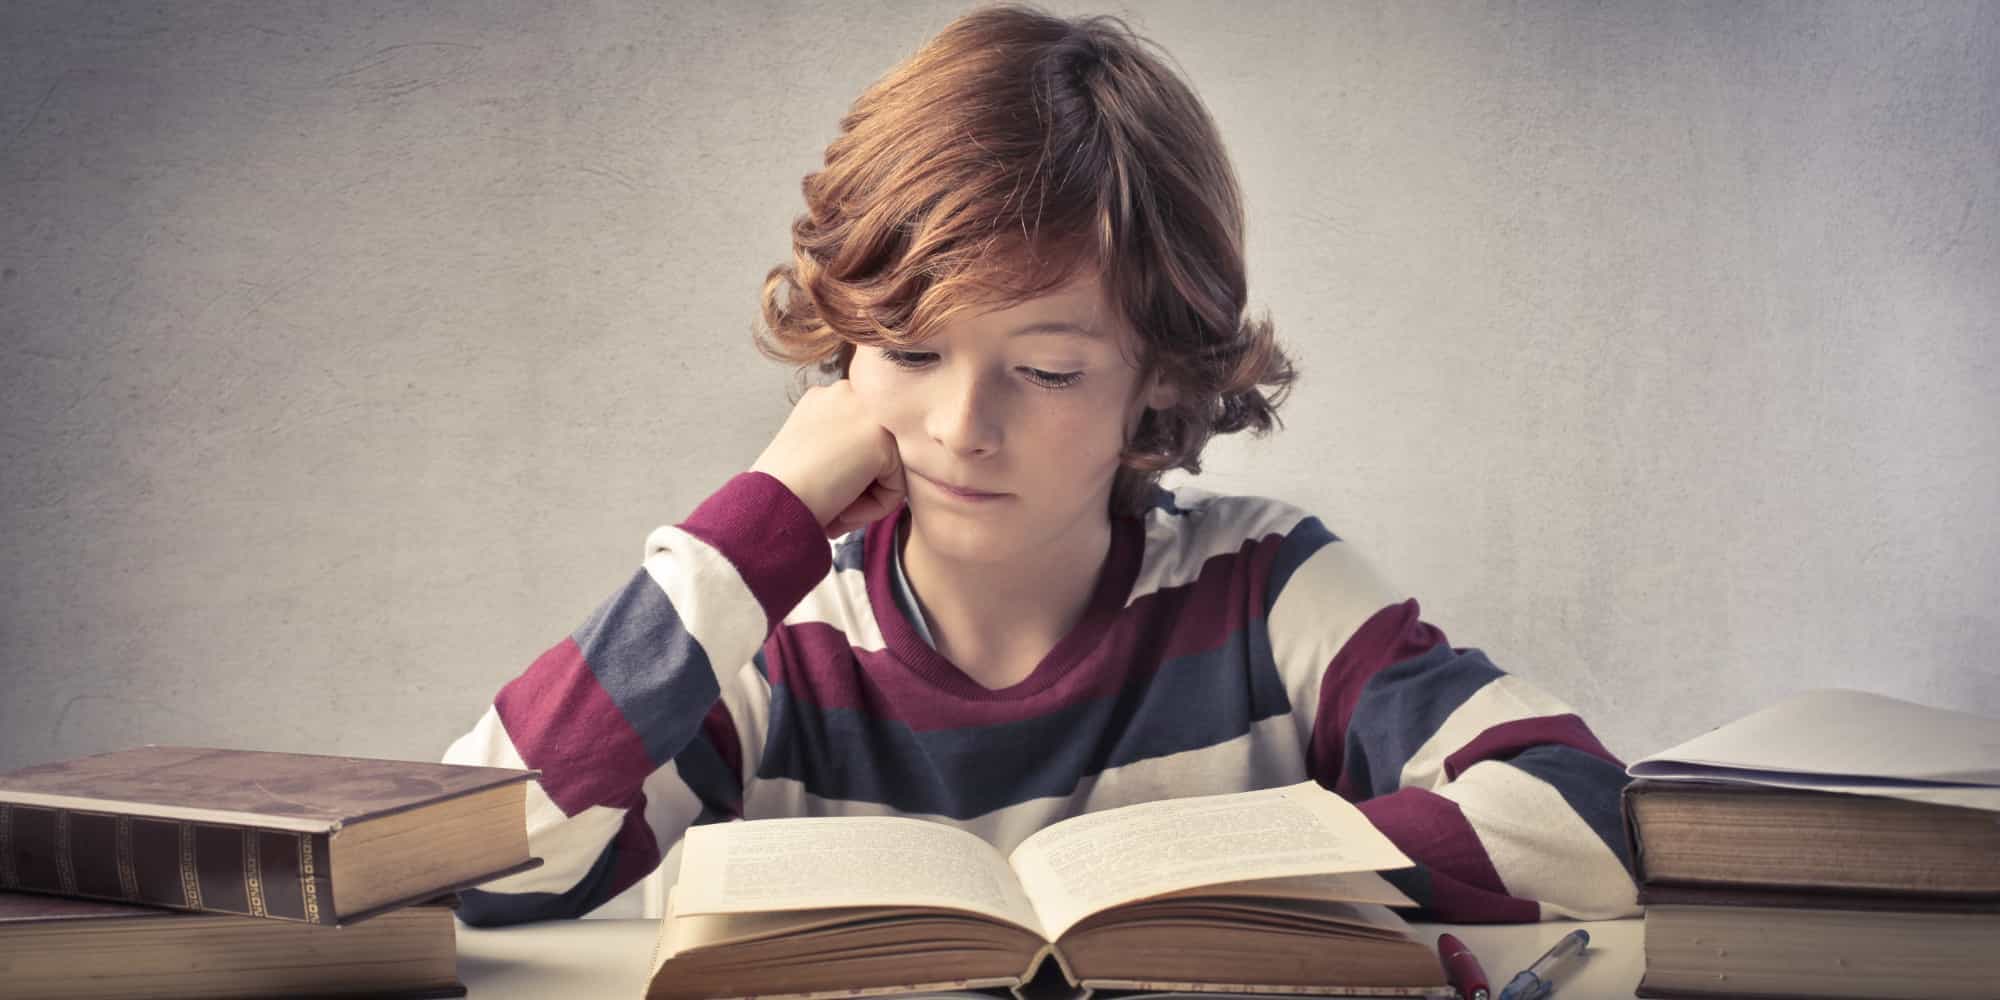 Читать мальчик 8 лет. Книга для мальчиков. Мальчик с книжкой. Подросток с книгой. Ученик с книжкой.